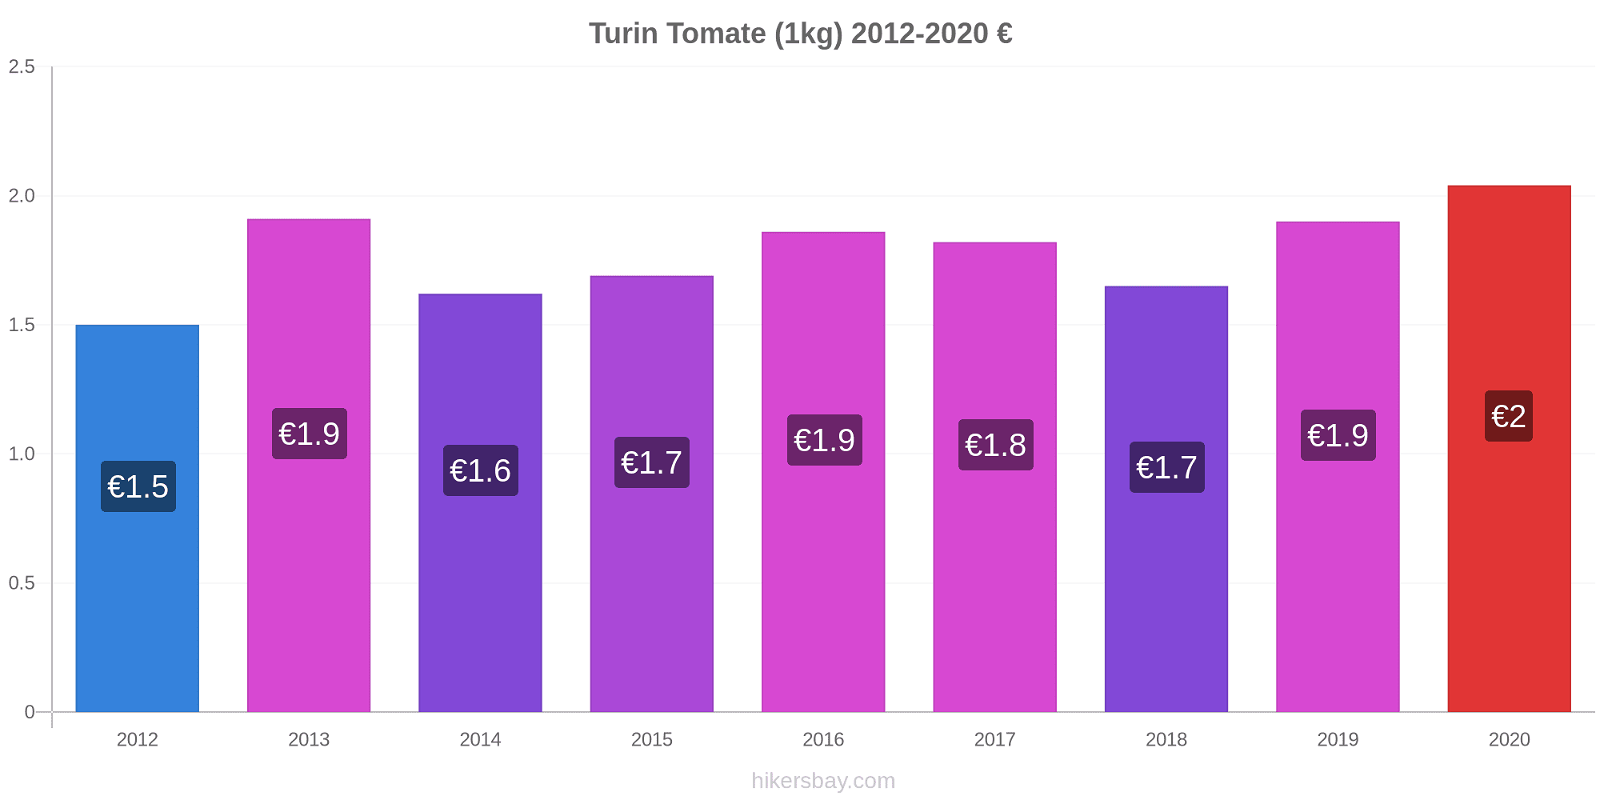 Turin changements de prix Tomate (1kg) hikersbay.com